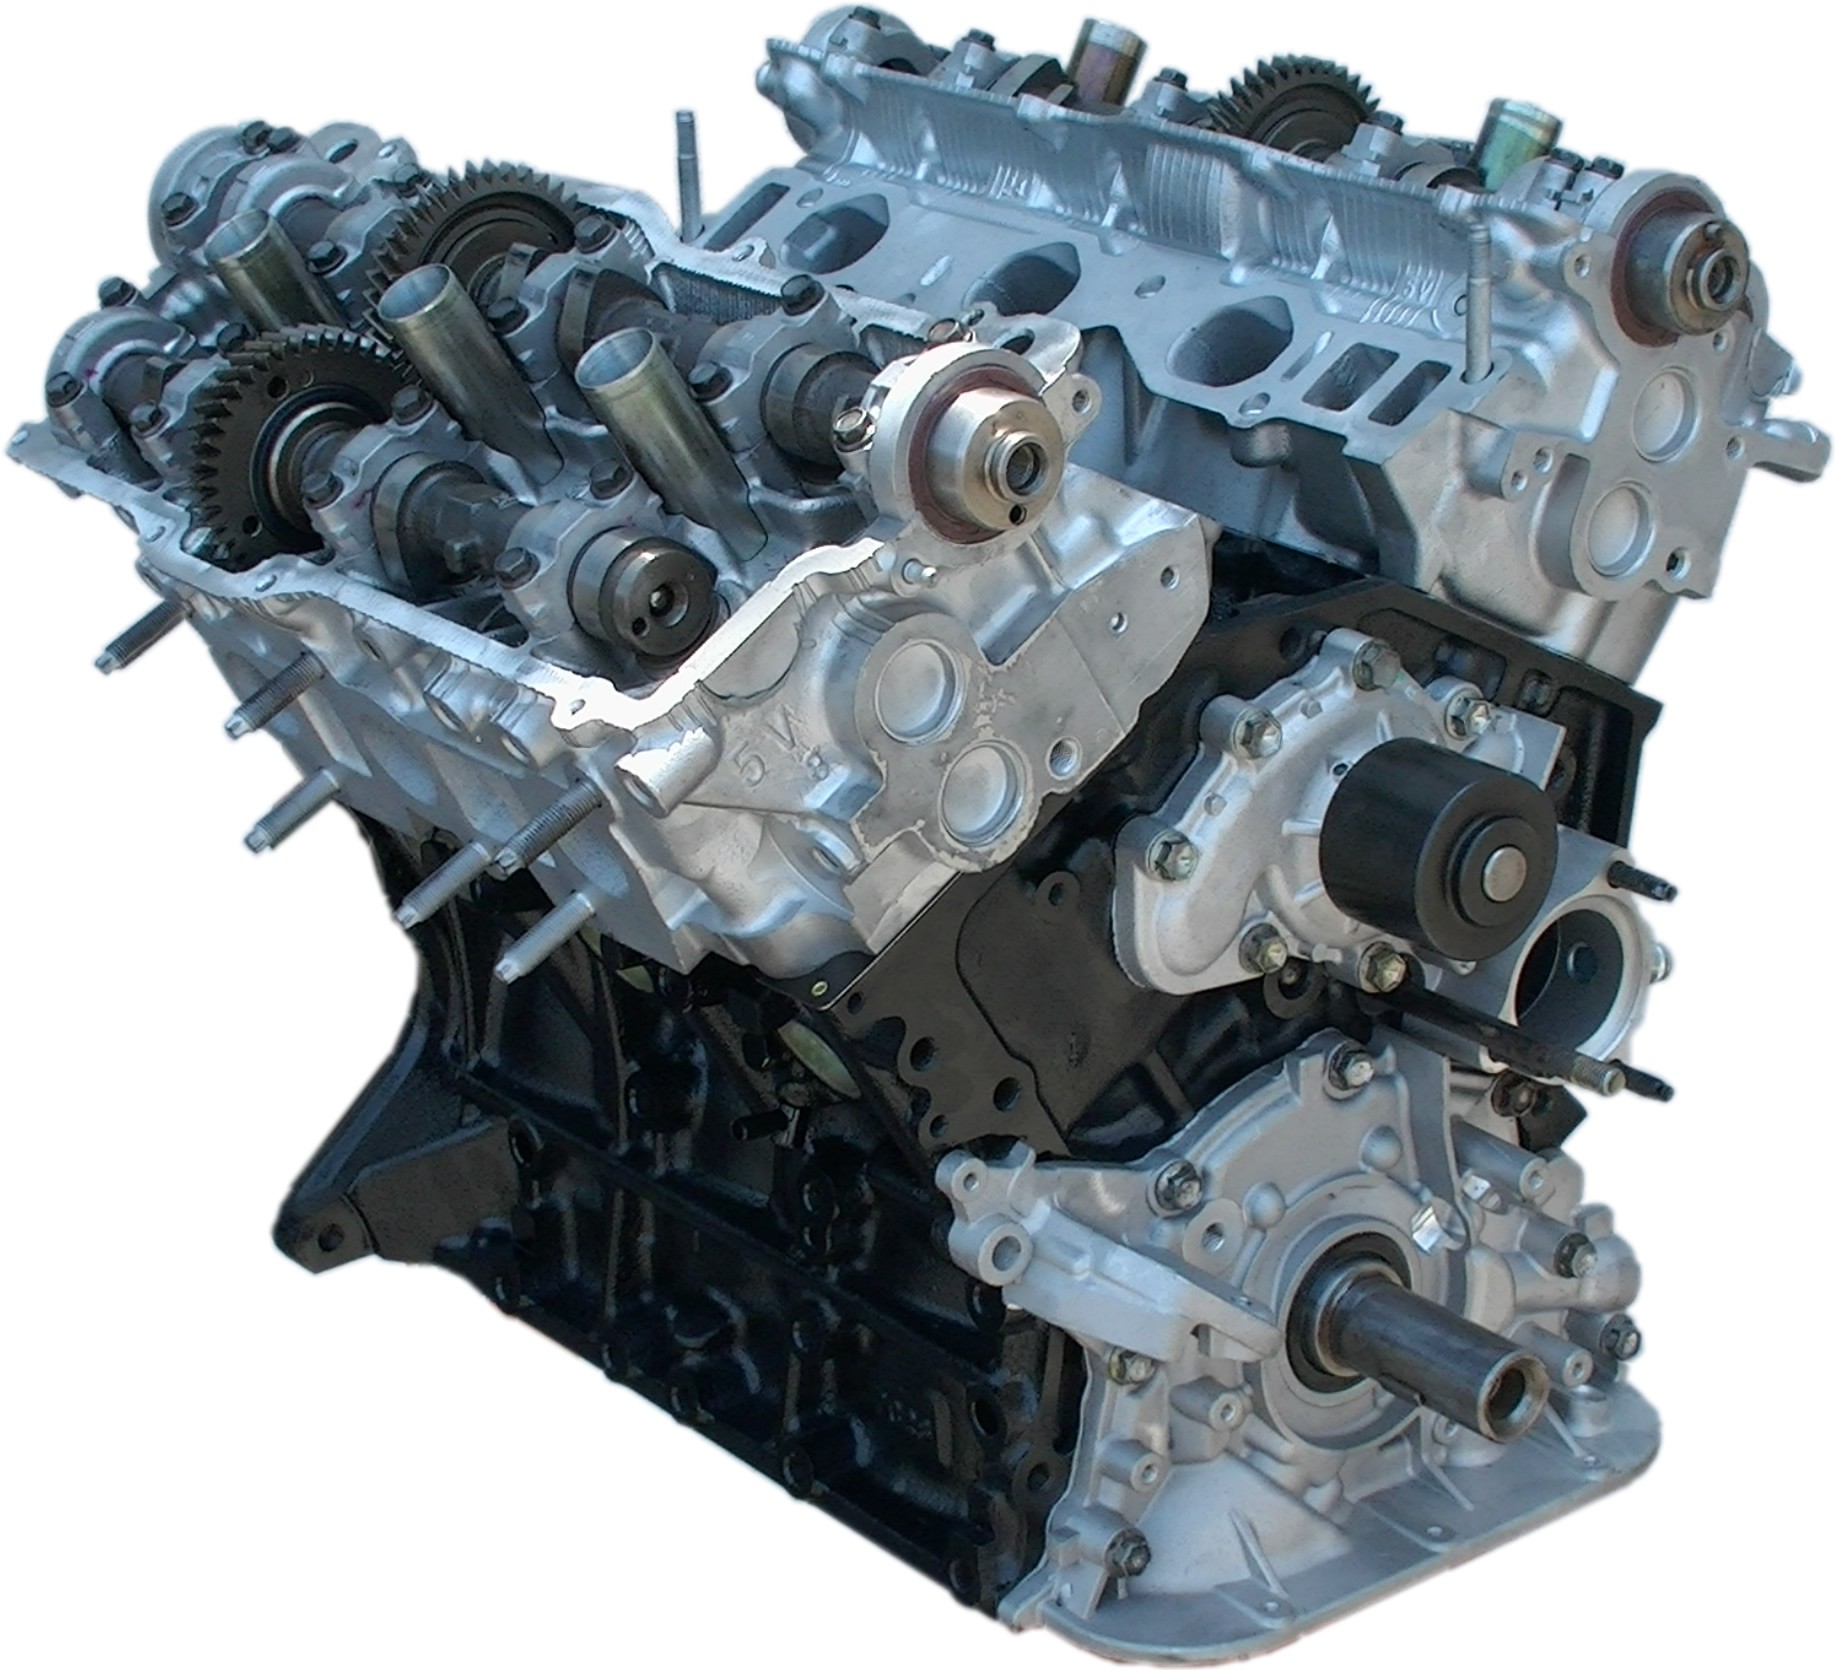 Rebuilt 96-04 Toyota Tacoma V6 5VZE 3.4L Engine « Kar King Auto 2000 Toyota Tacoma Engine 3.4 L V6